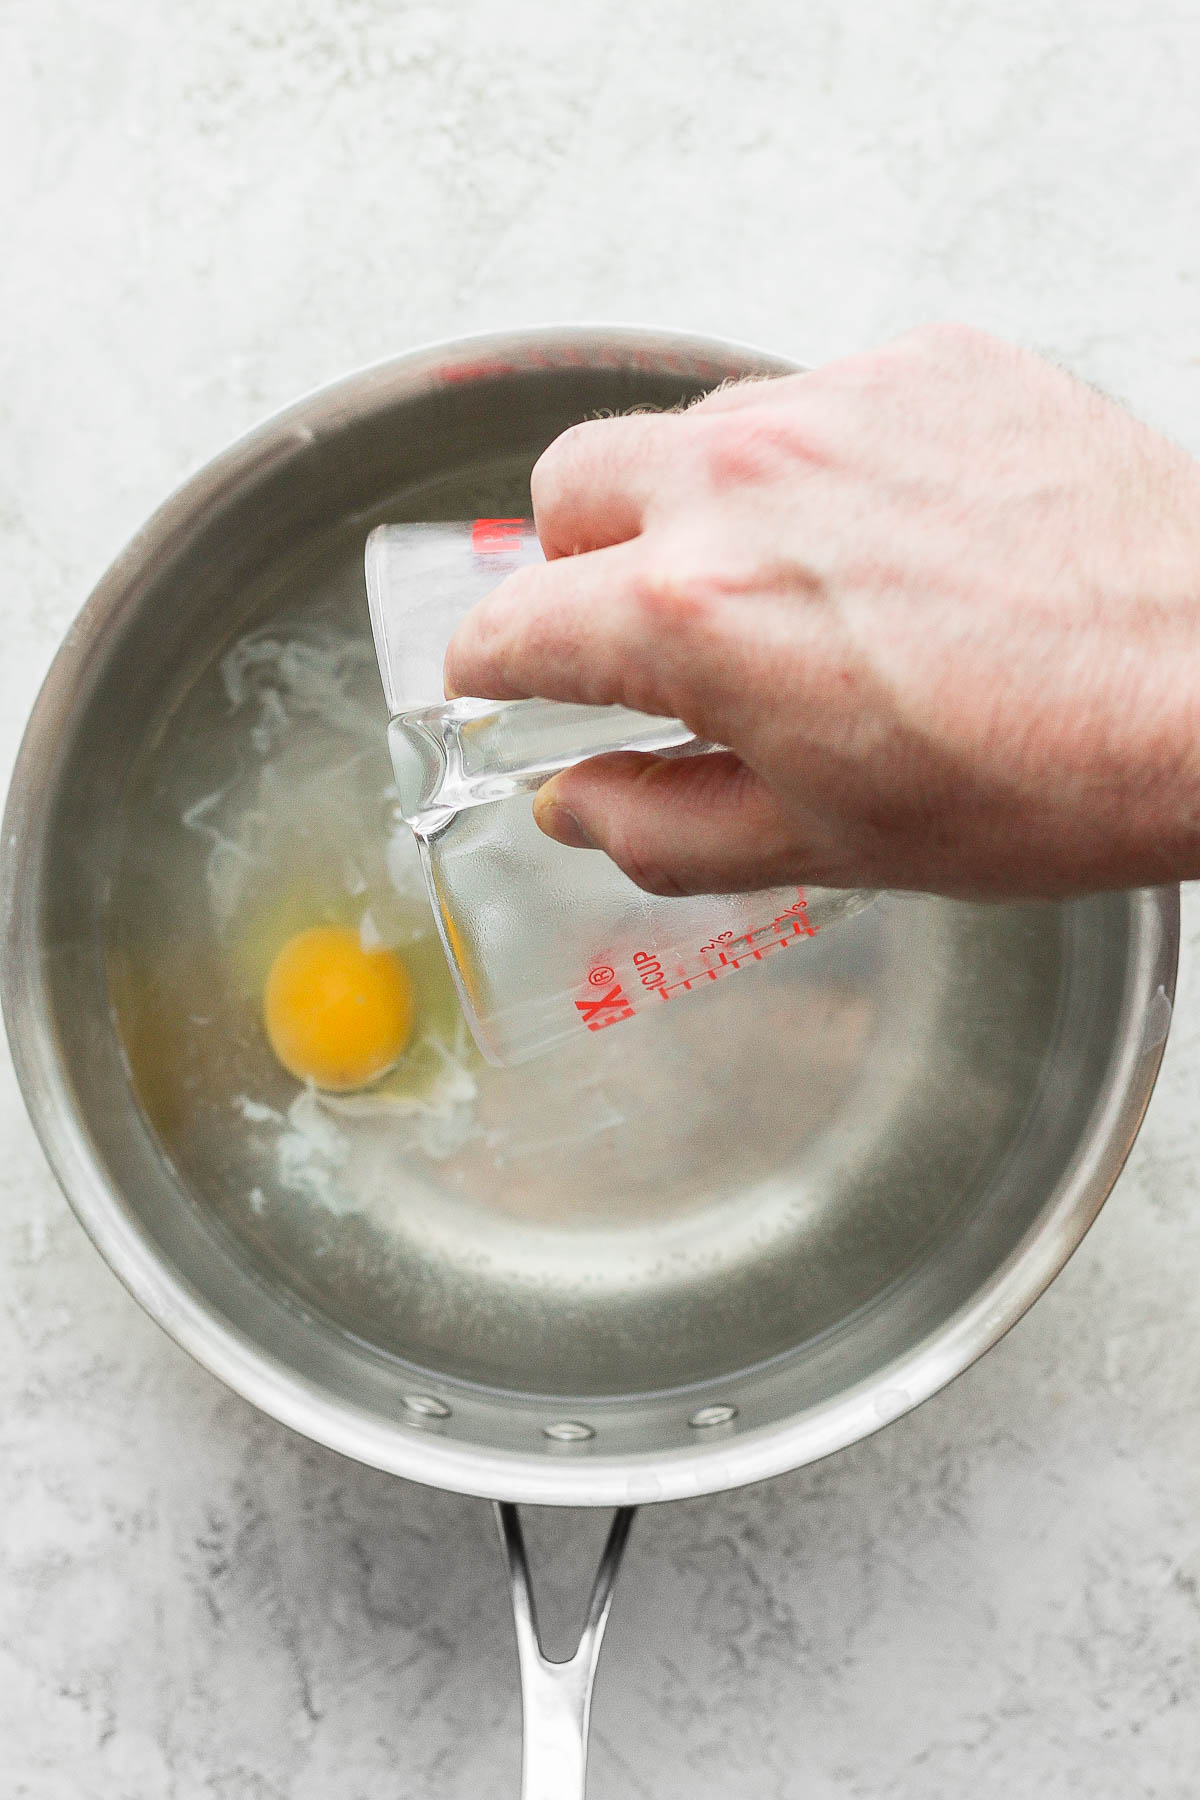 Cách làm trứng chần hoàn hảo như đầu bếp nhà hàng - Ảnh 4